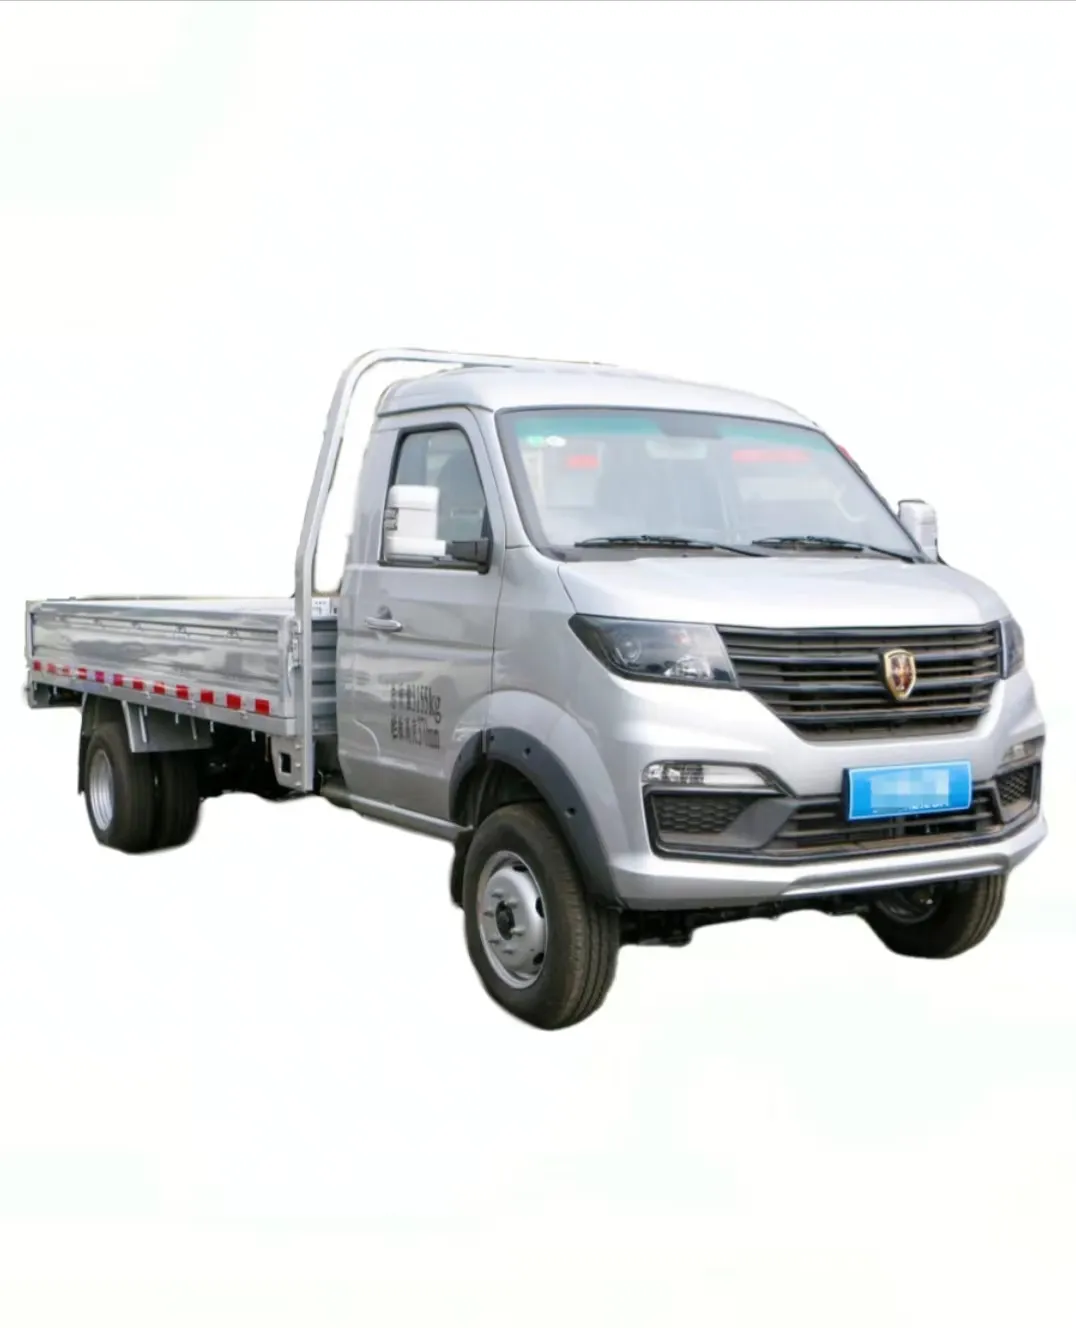 Высококачественный грузовой ящик размером 3700x1760x370 мм фургон небольшой грузовик используется для перевозки мелких товаров